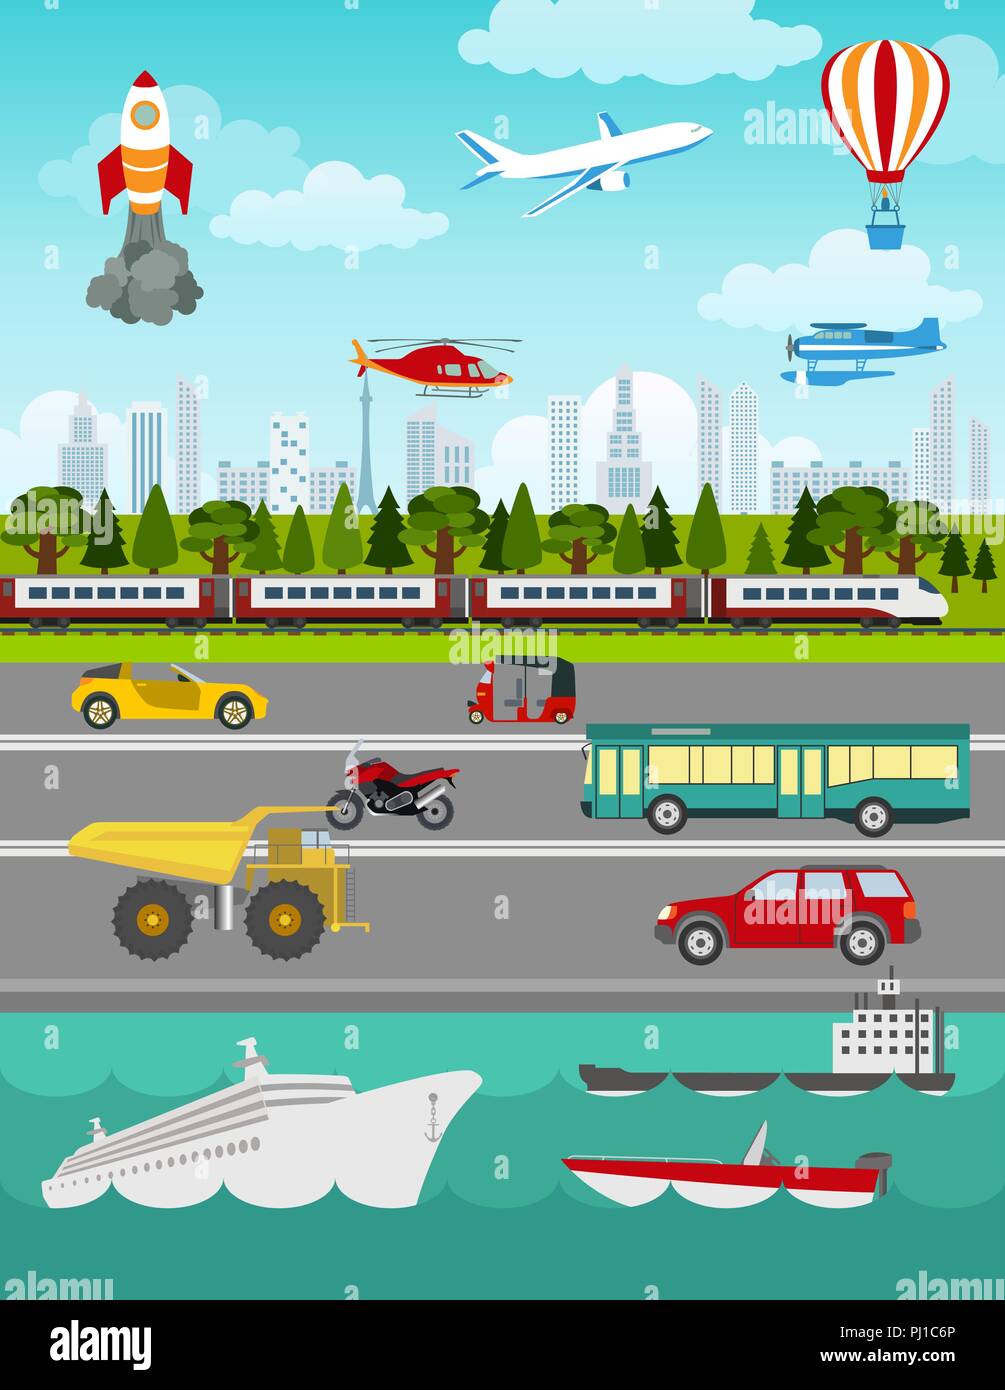 Trasporto elementi infographics. Automobili, camion, pubblico, aria, acqua, il trasporto ferroviario. In stile retrò illustrazione. Vettore Illustrazione Vettoriale